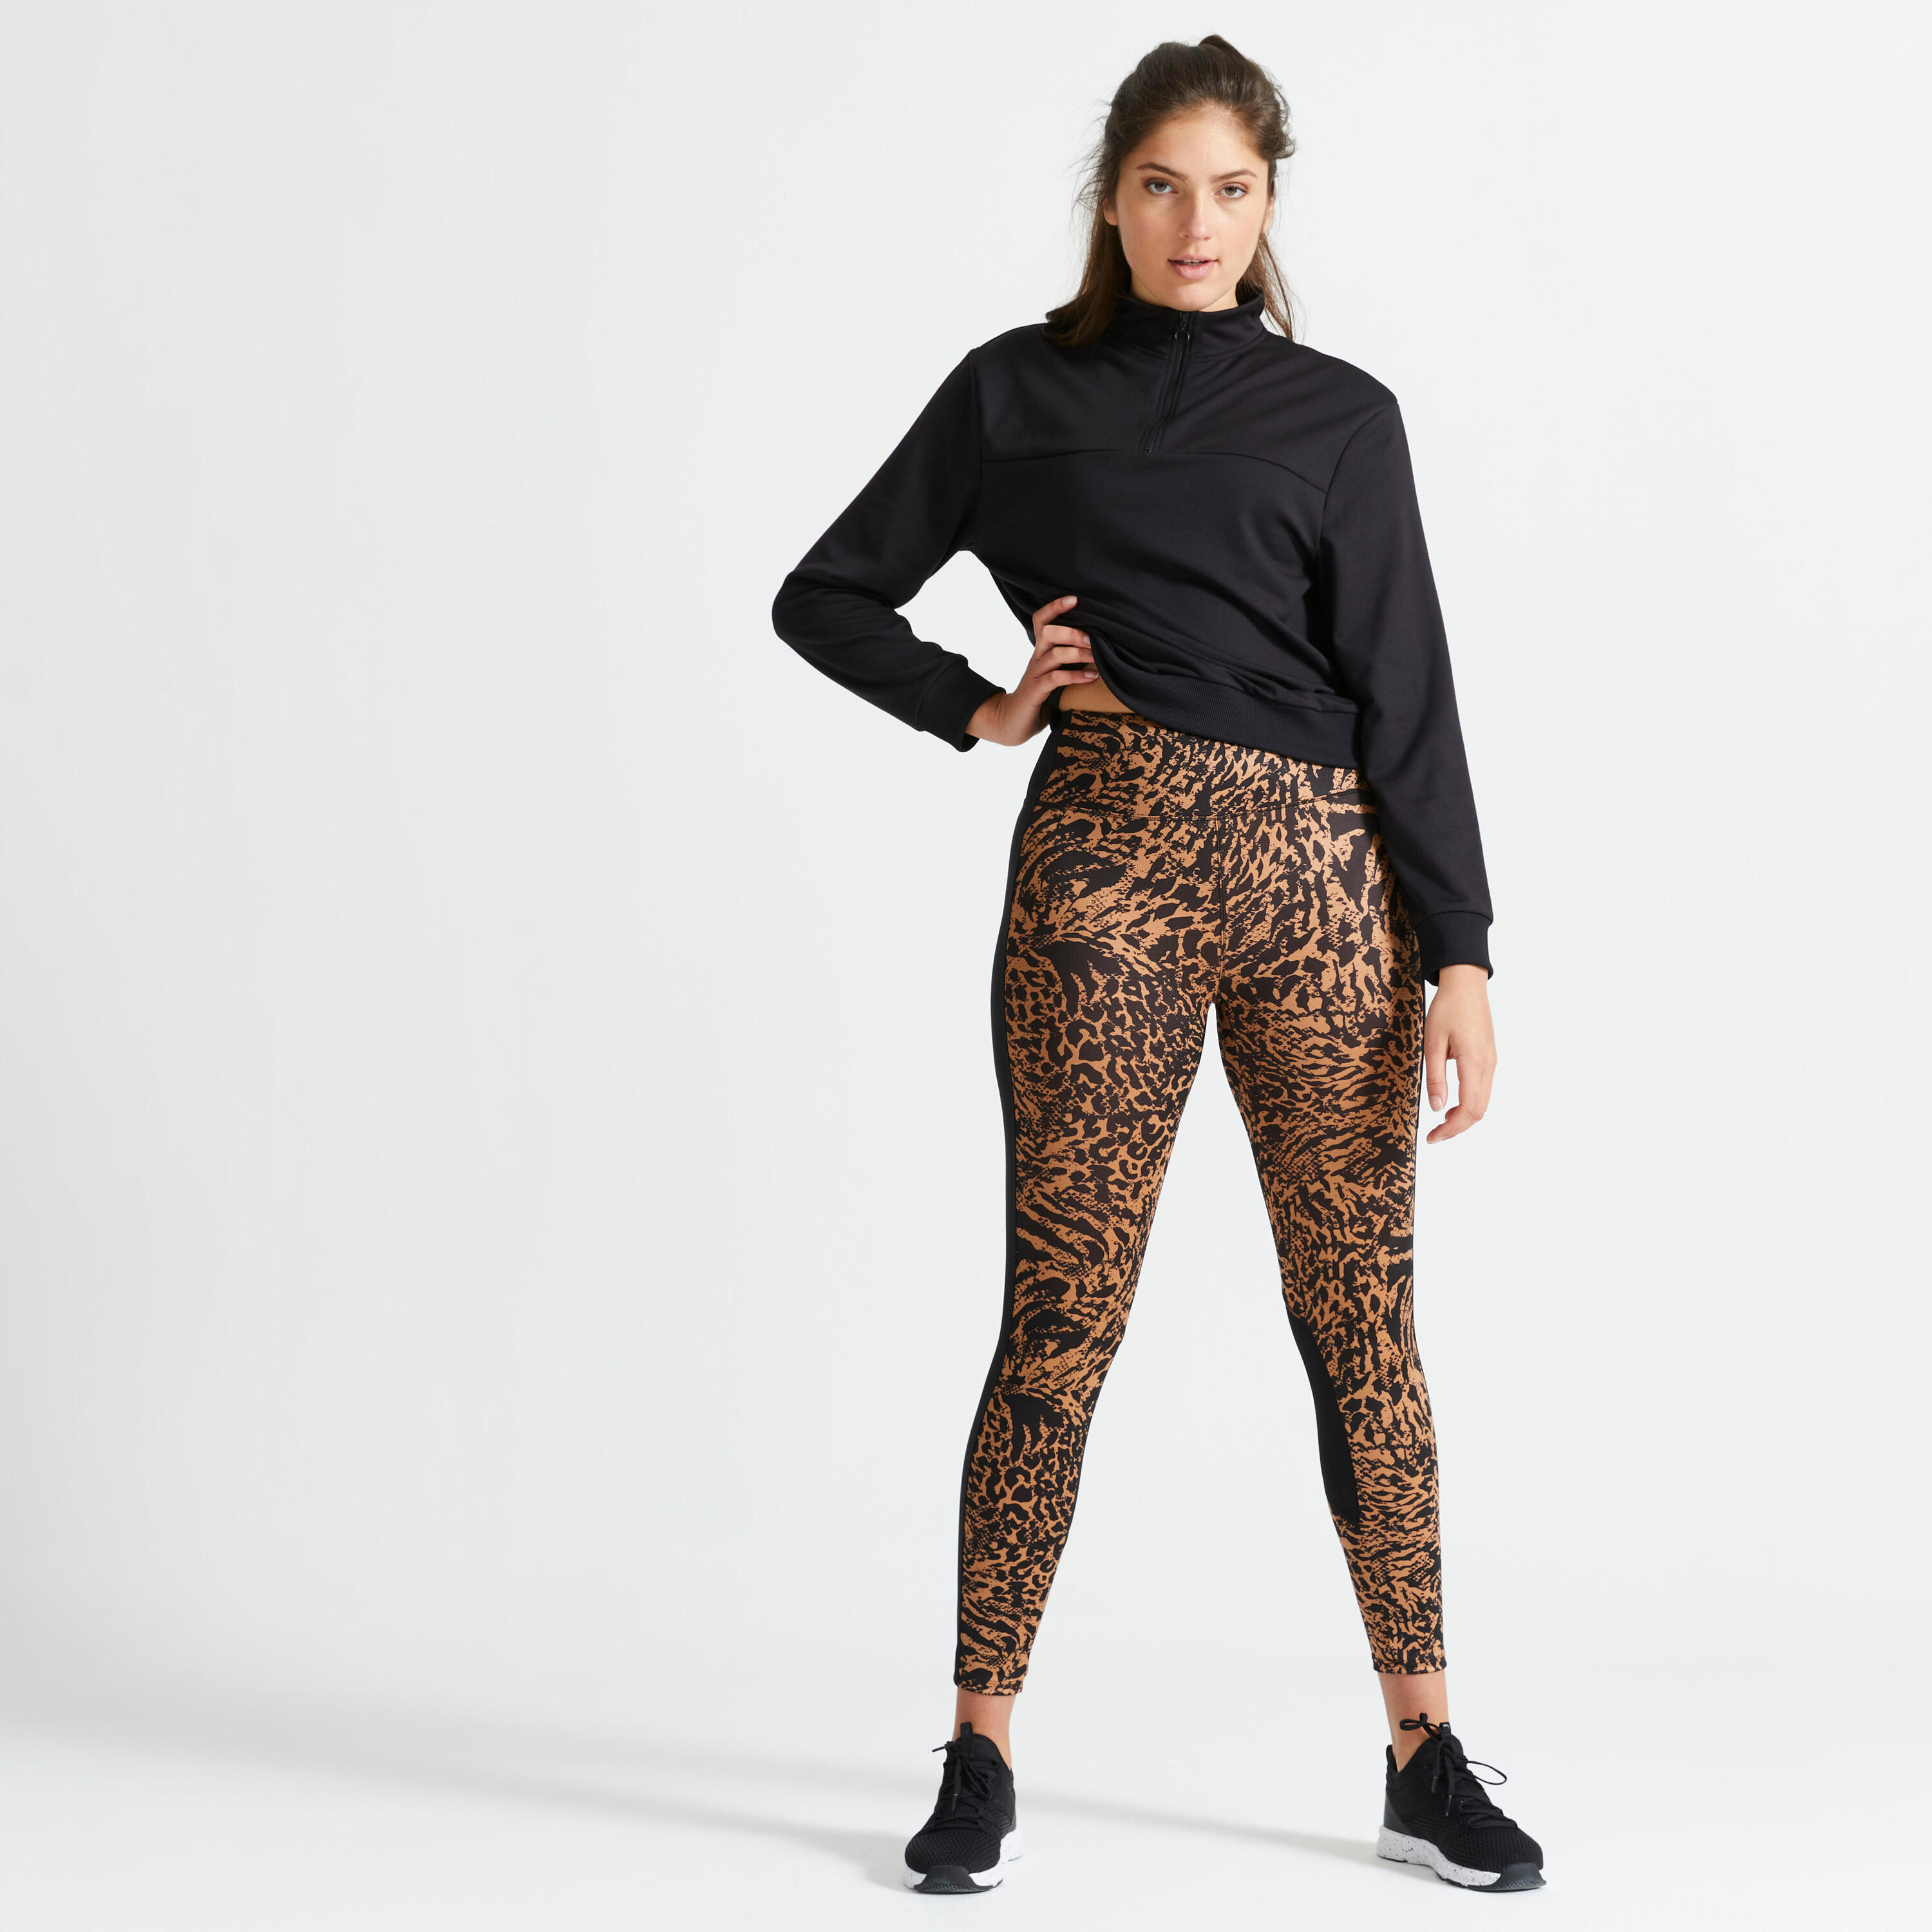 Women's phone pocket fitness high-waisted leggings, leopard print 2/5